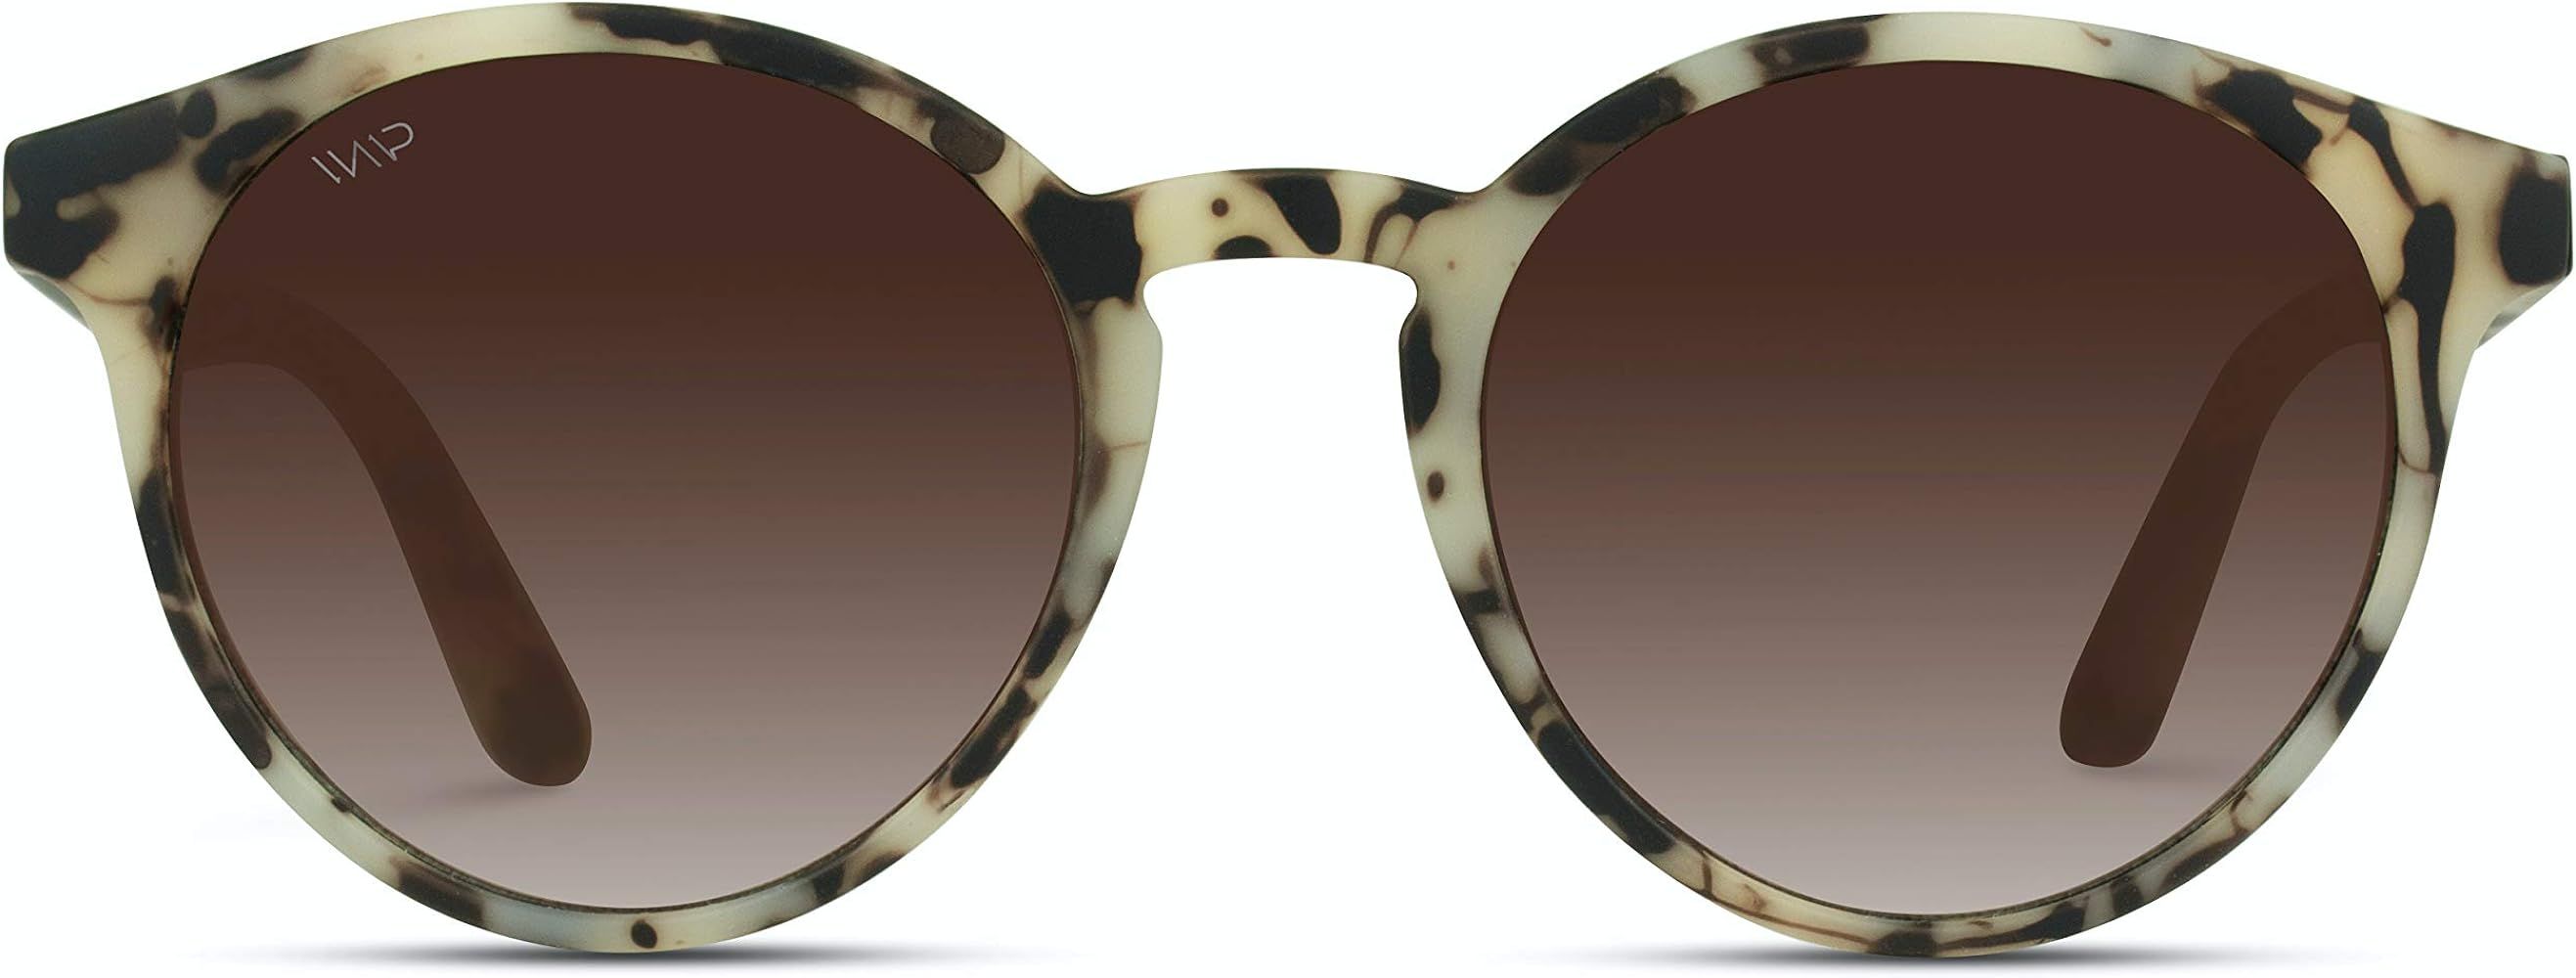 Classic Small Round Retro Sunglasses | Amazon (US)